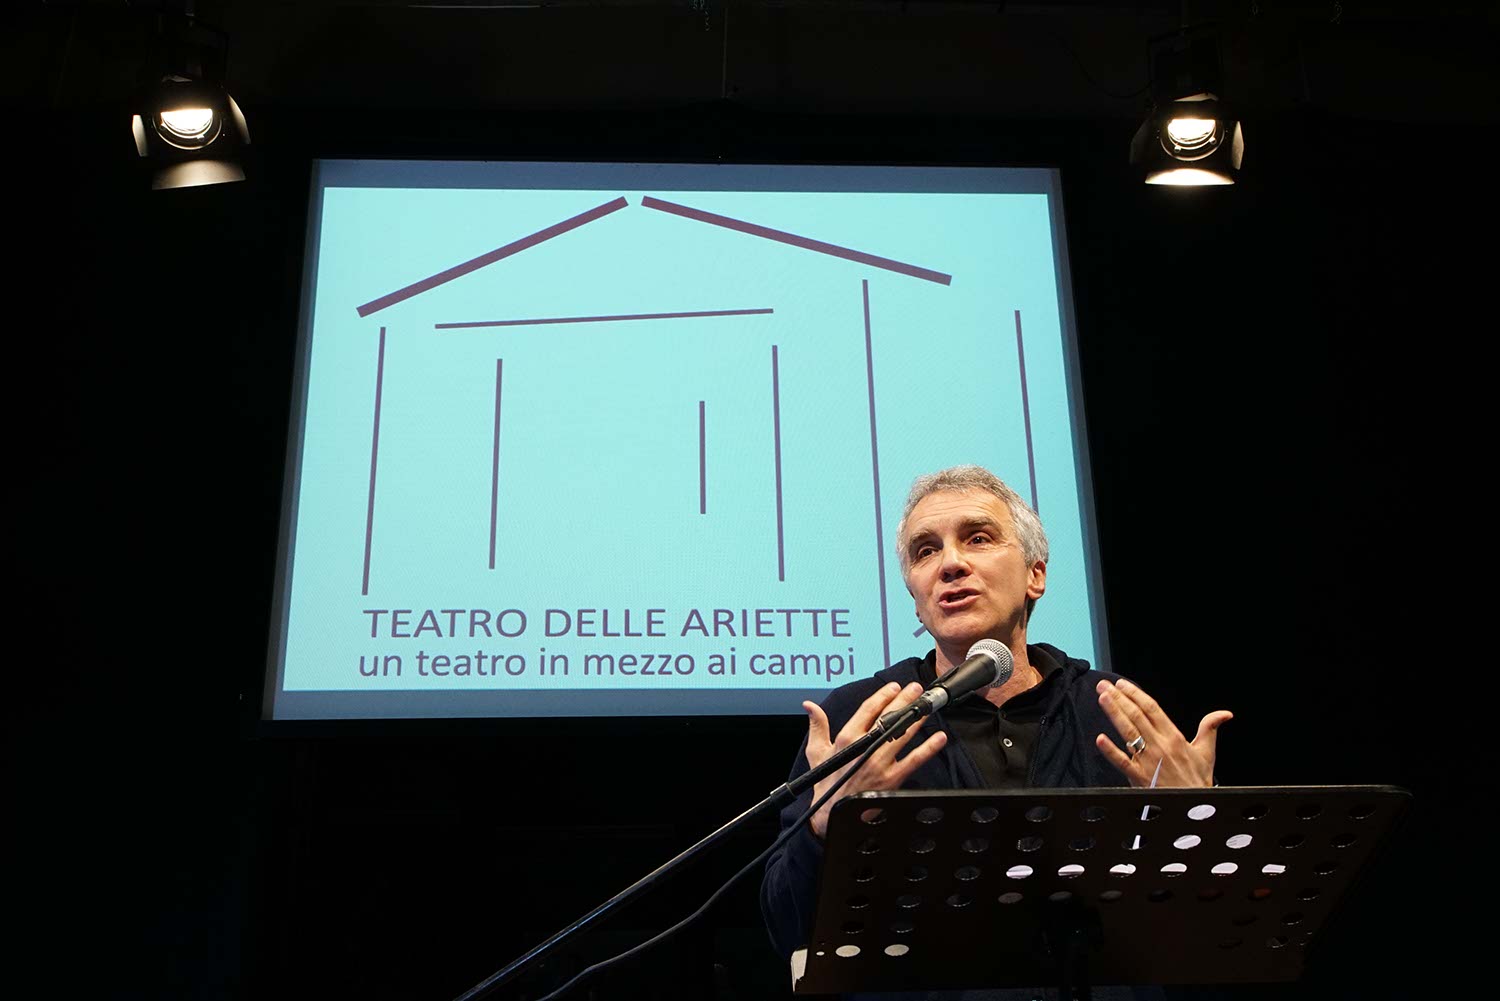 Teatro delle Ariette - Inaugurazione Teatro 8 aprile 2017